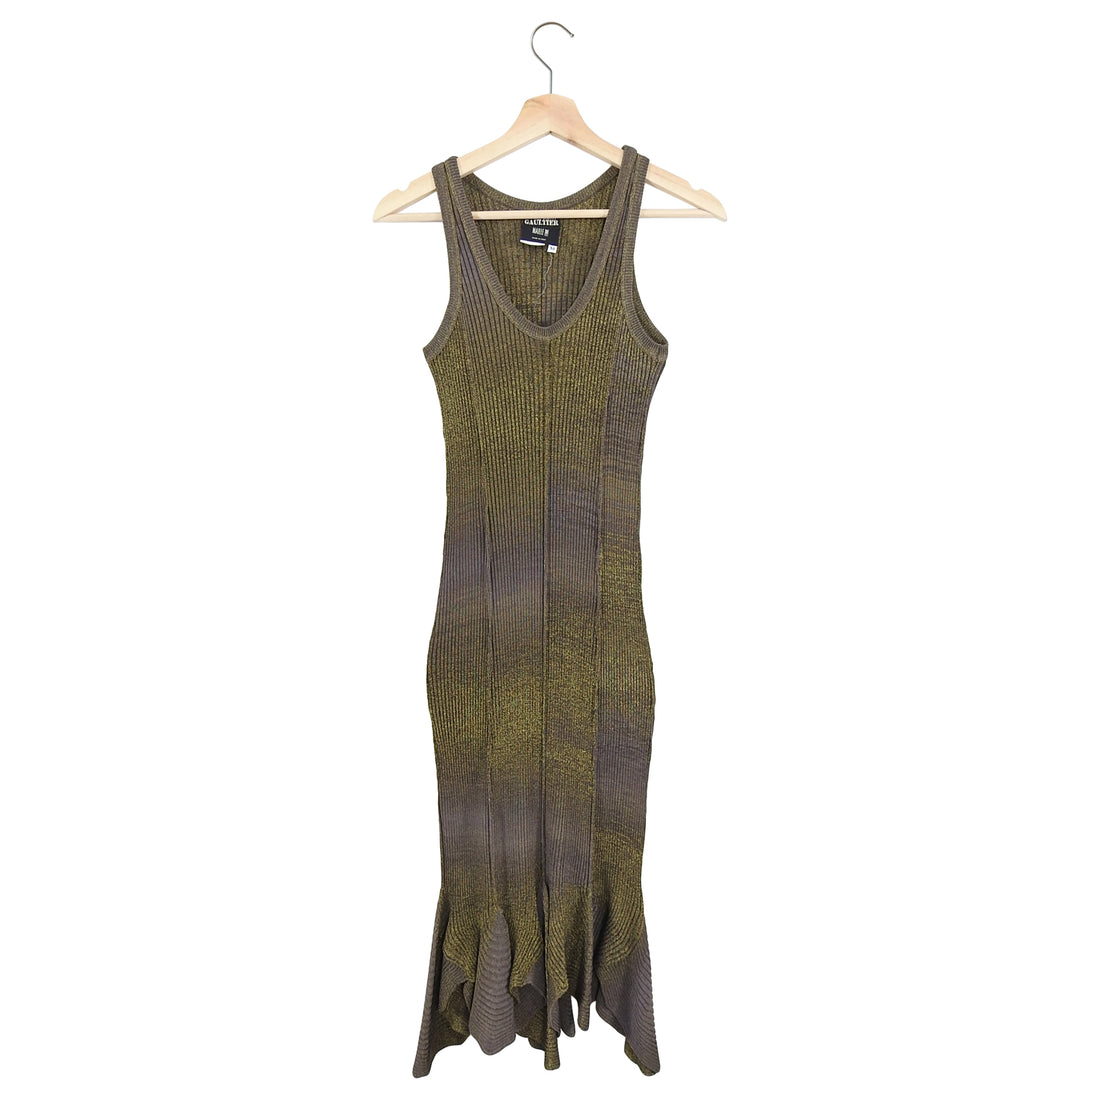 Jean Paul Gaultier Bronze Metallic Knit Tank Dress - M / 6/8